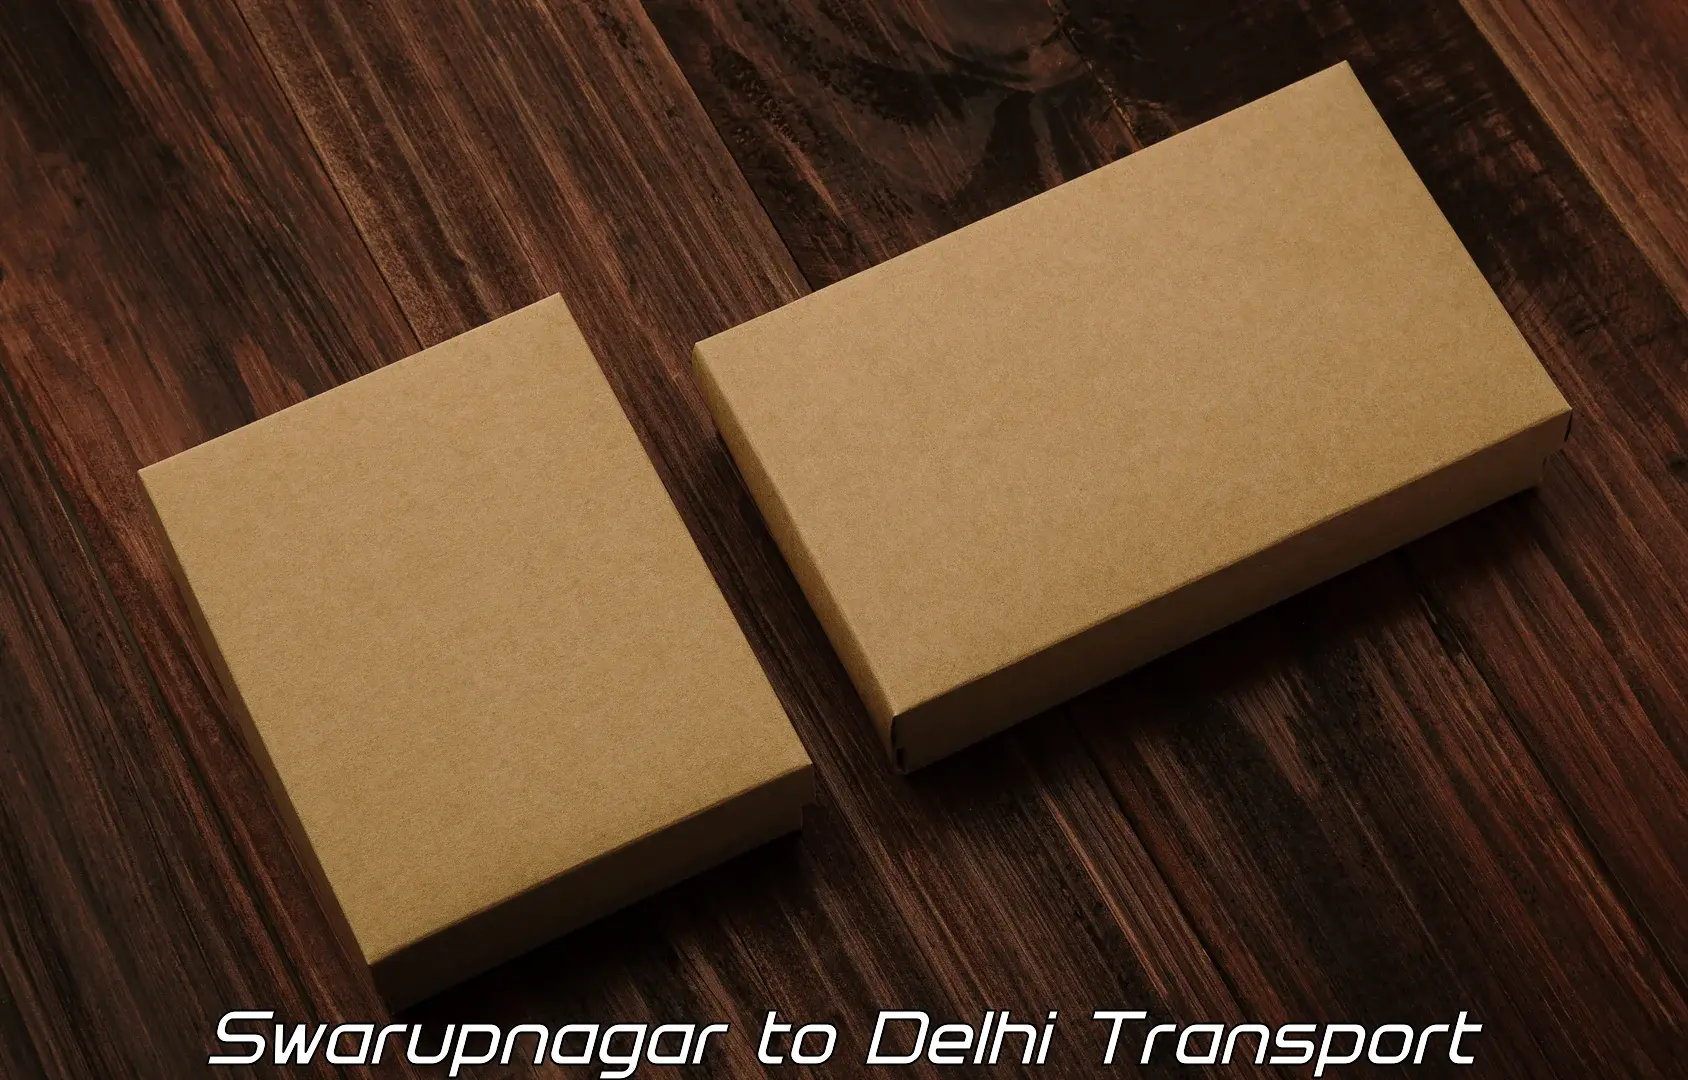 Package delivery services Swarupnagar to NIT Delhi